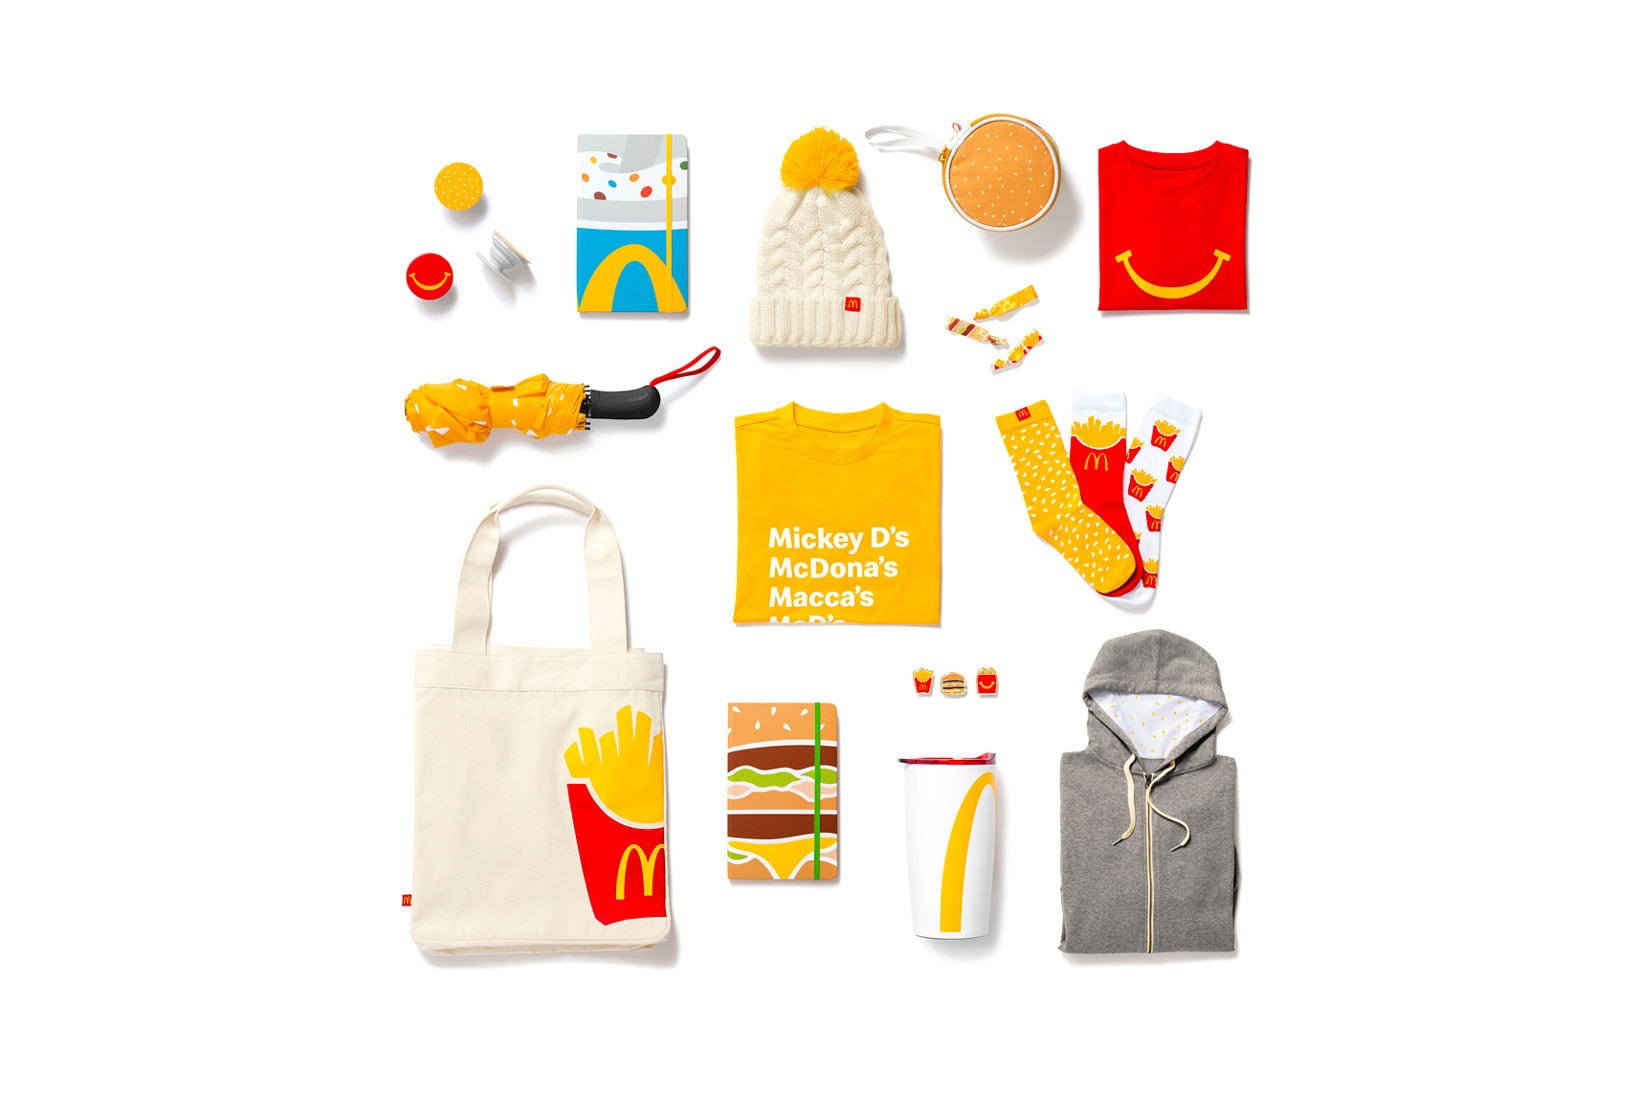 McDonald's Golden Arches Unlimited Merchandise